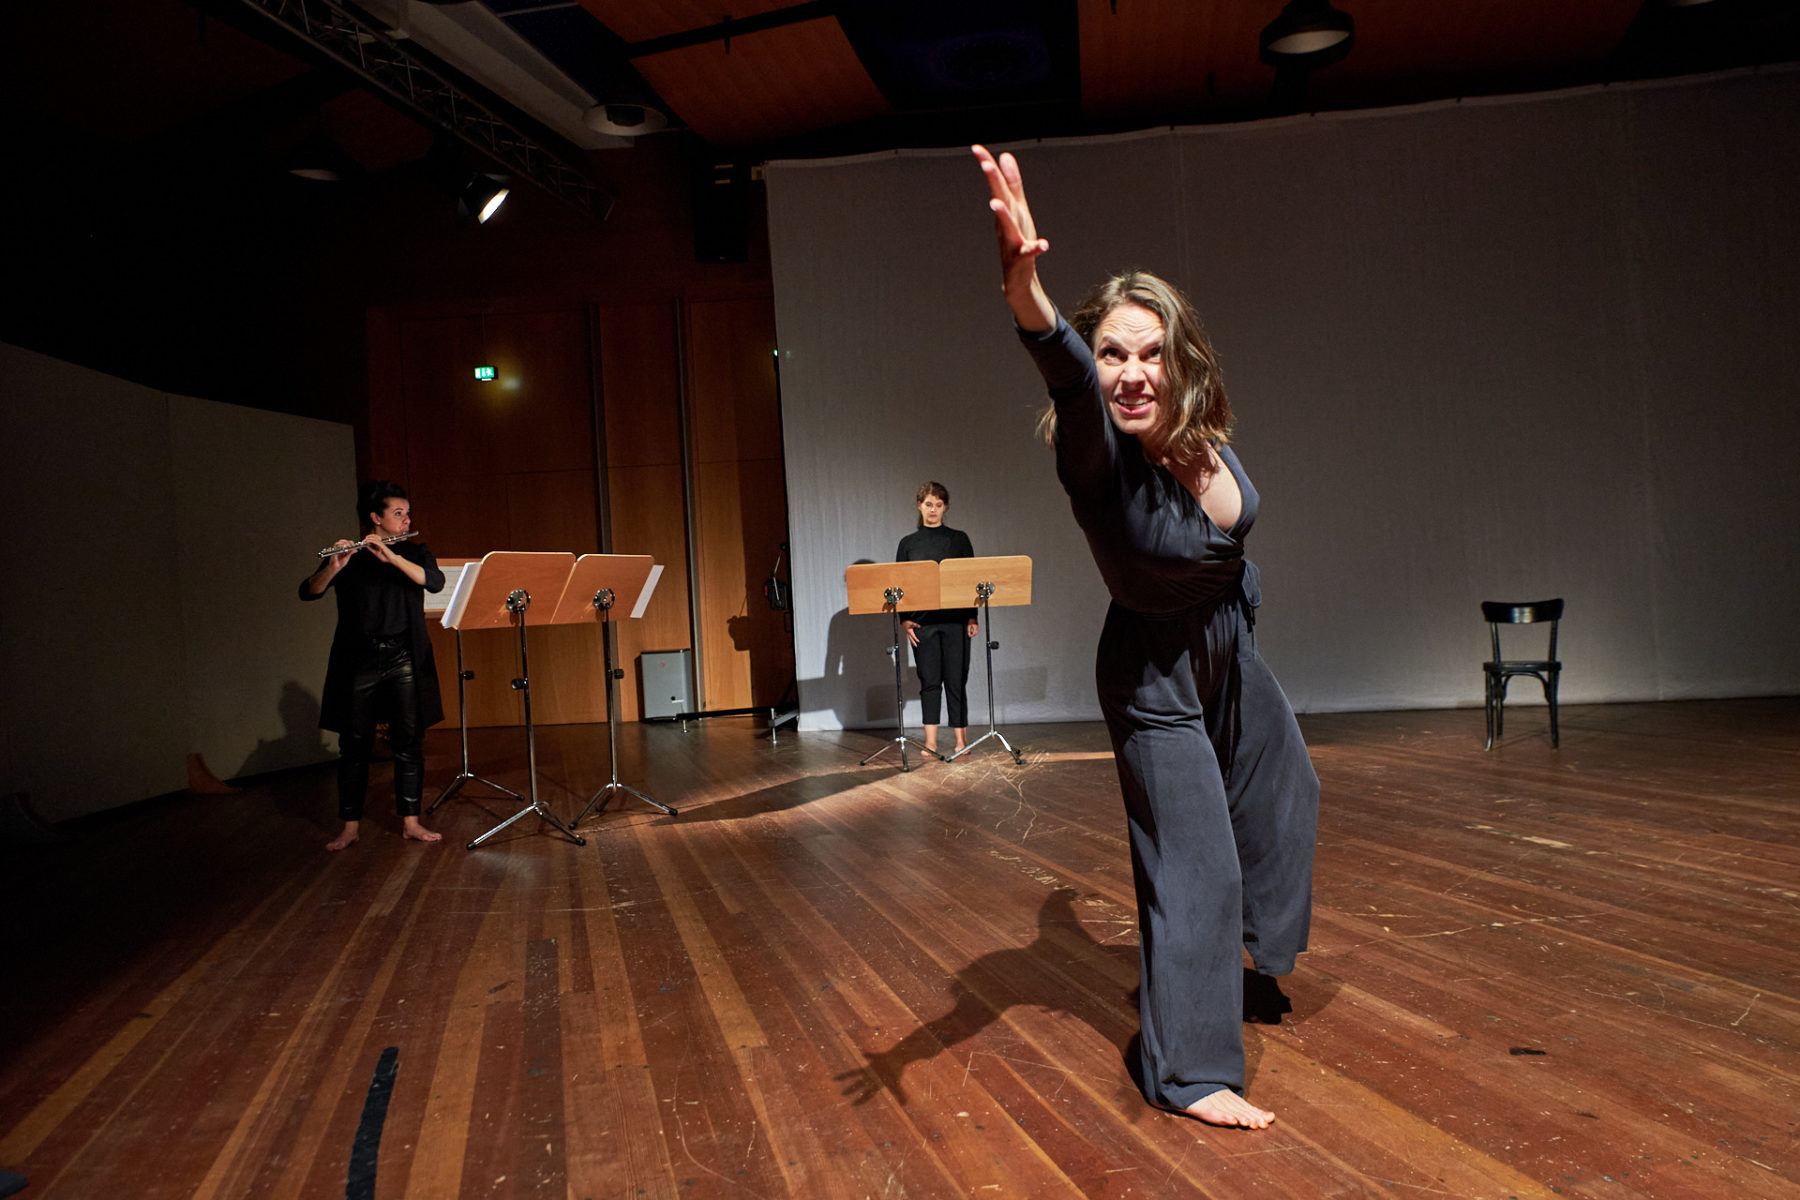 Kassandra Wedel tanzt und gebärdet im Vordergrund. Hinter ihr stehen Désirée Hall und Maren Schwier an Notenständern. Désirée Hall spielt Querflöte.